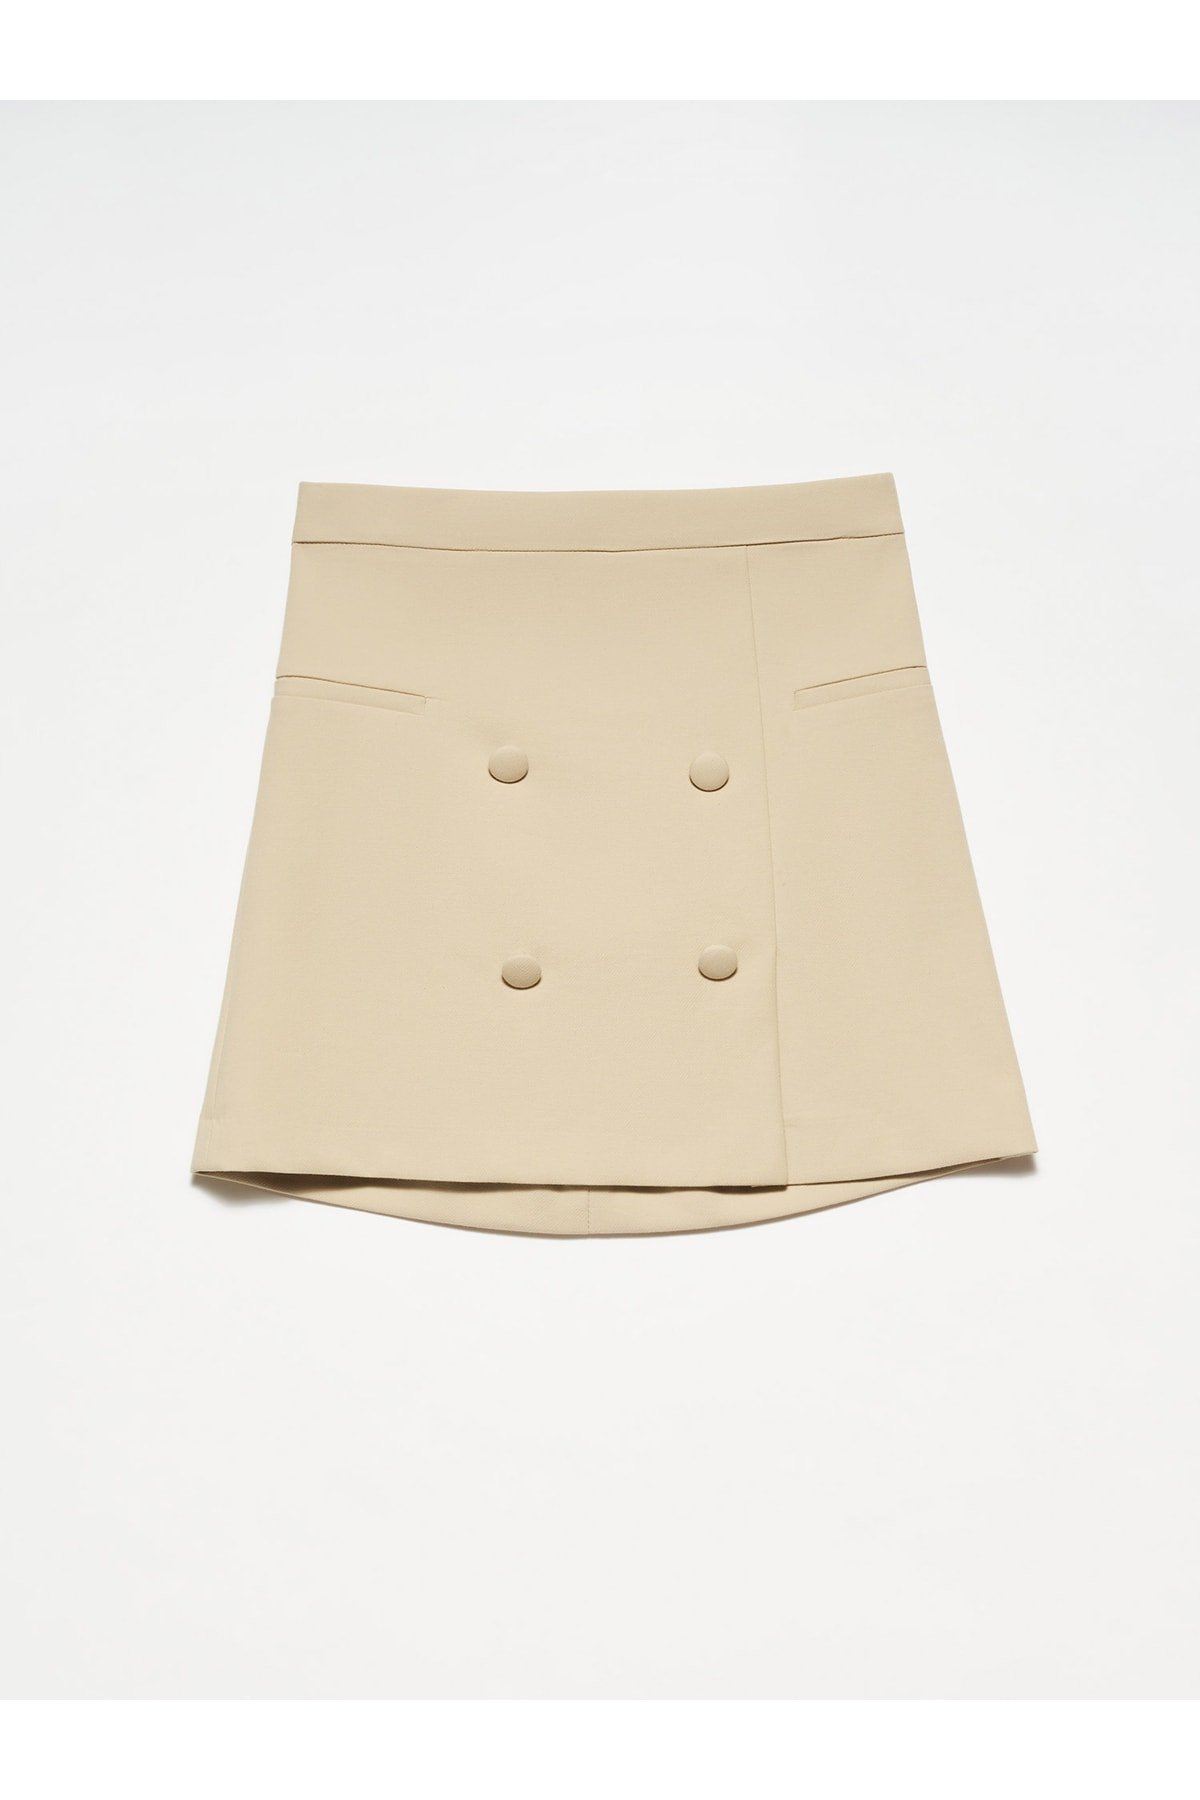 Dilvin 80776 Short Skirt-stone